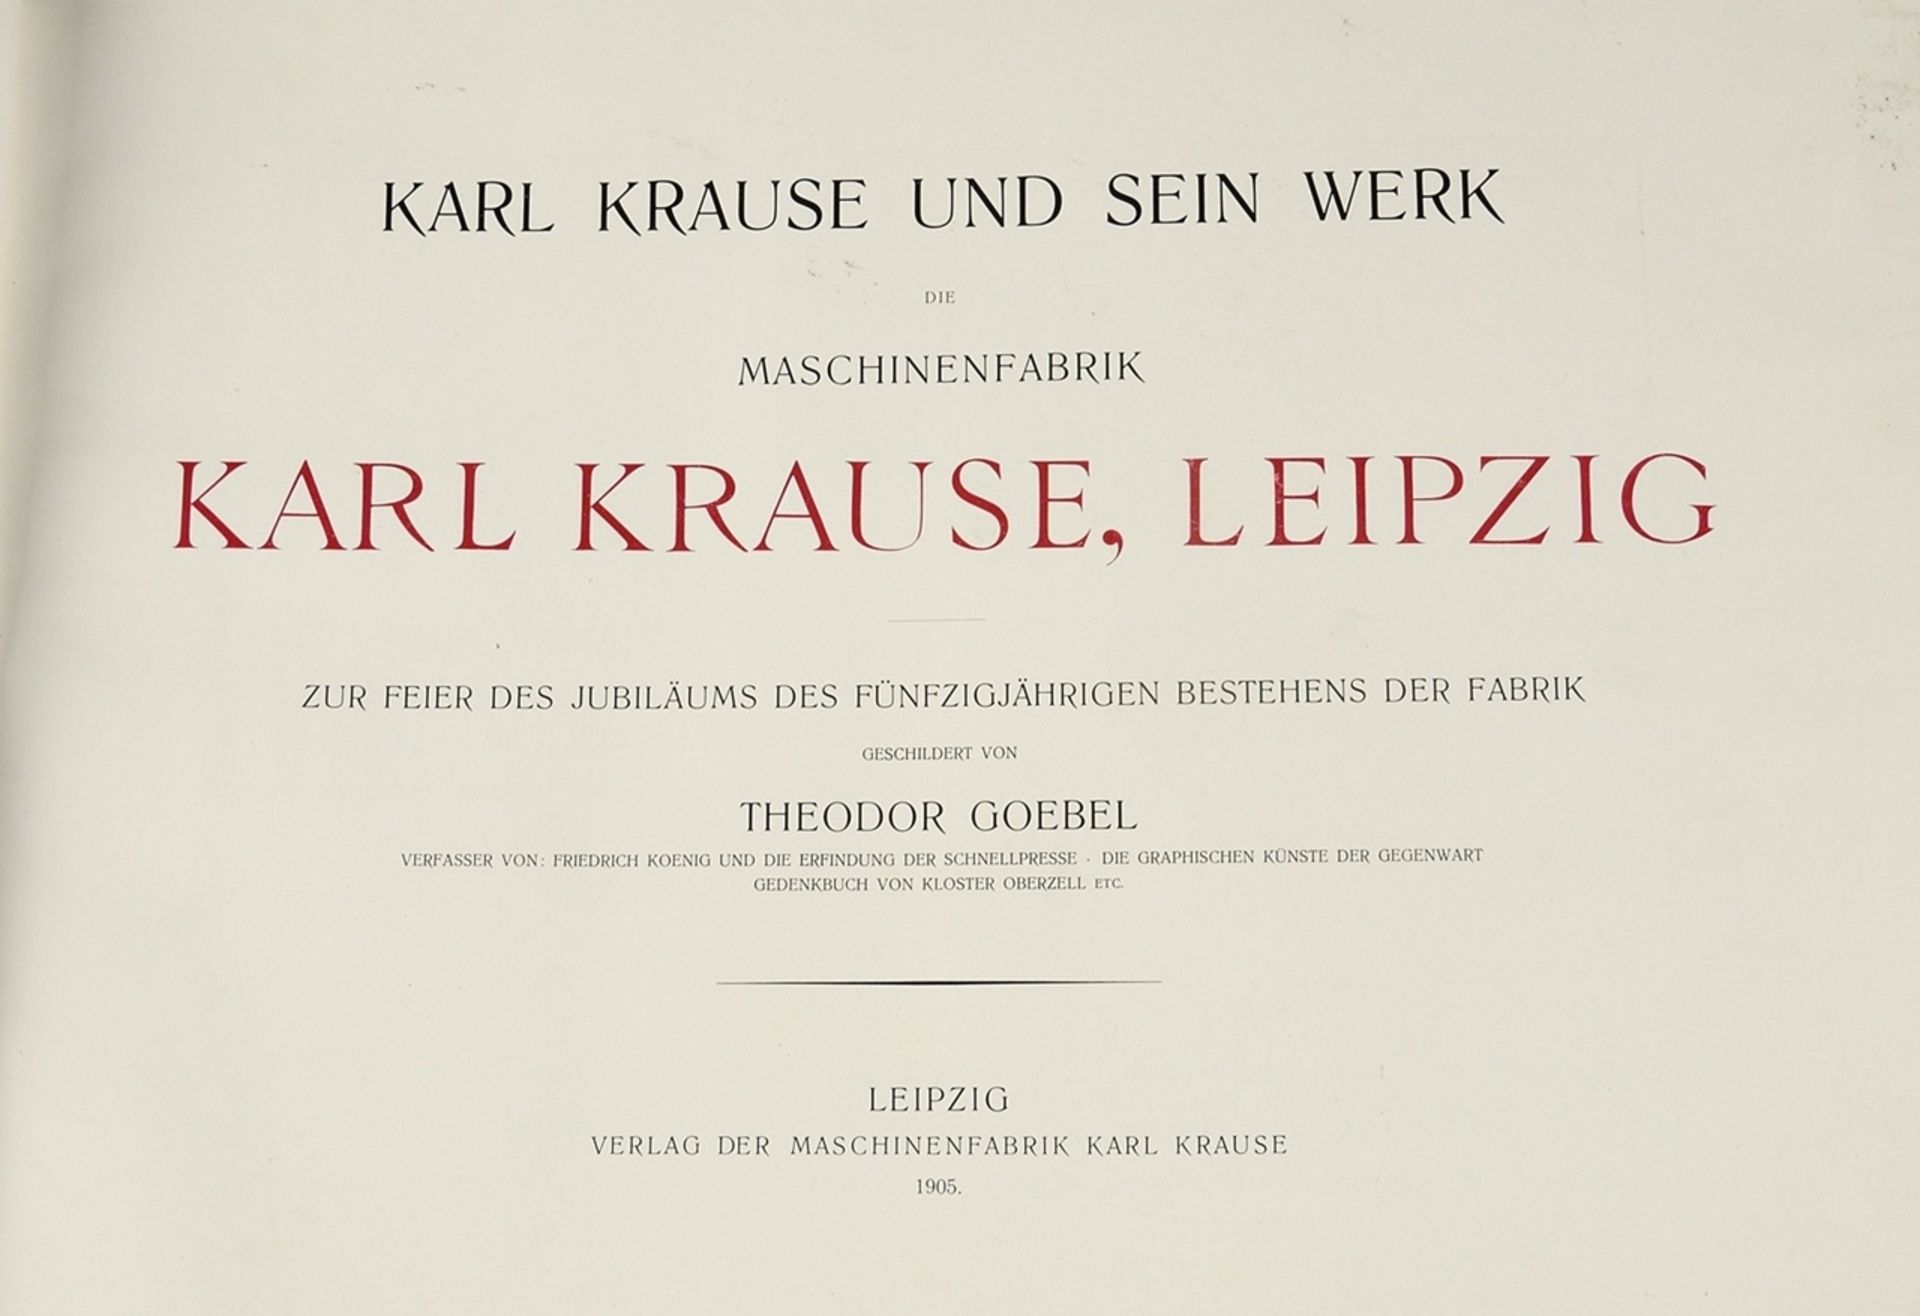 Karl Krause, Leipzig - Image 2 of 2